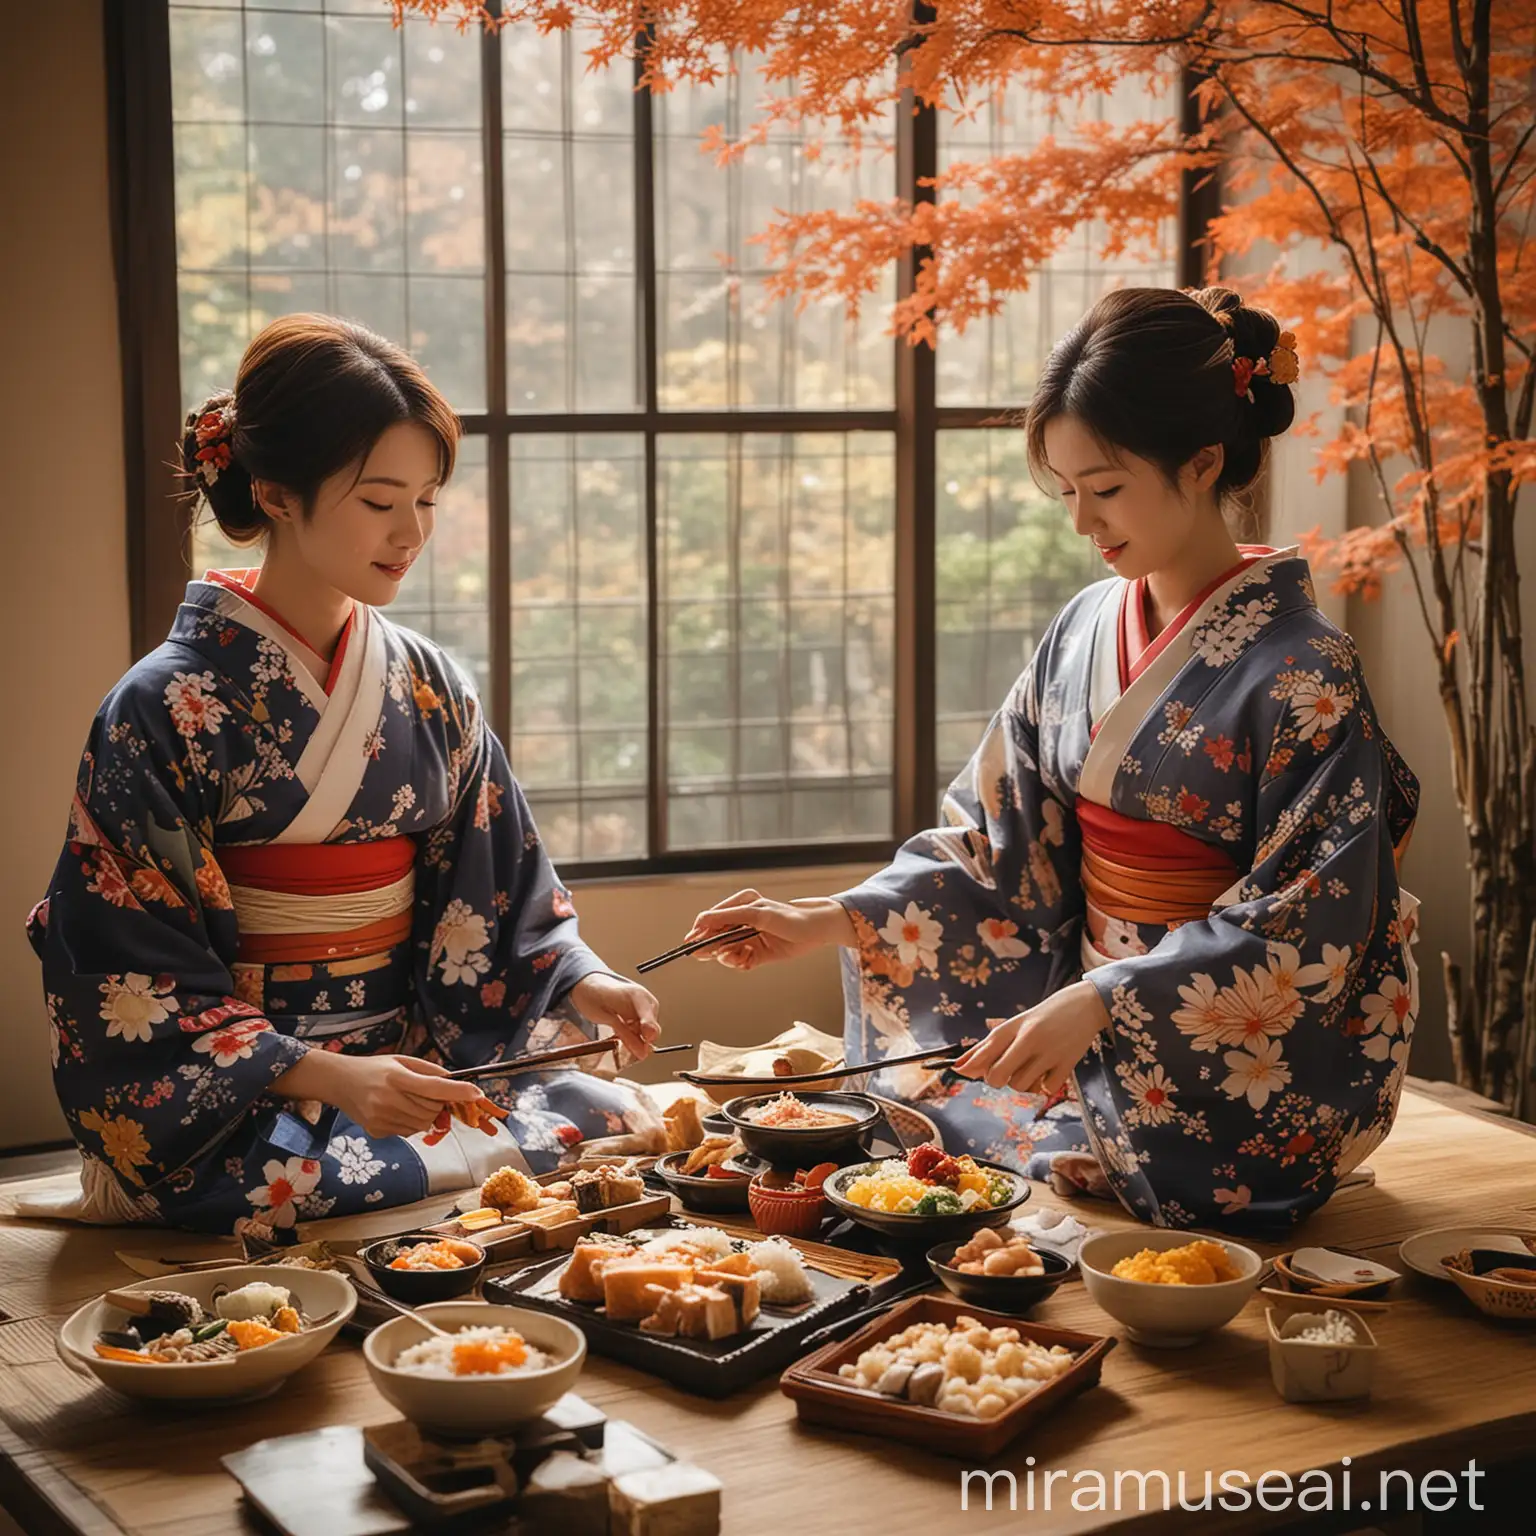 Women wearing kimono while eating japanese food during autumn in japan